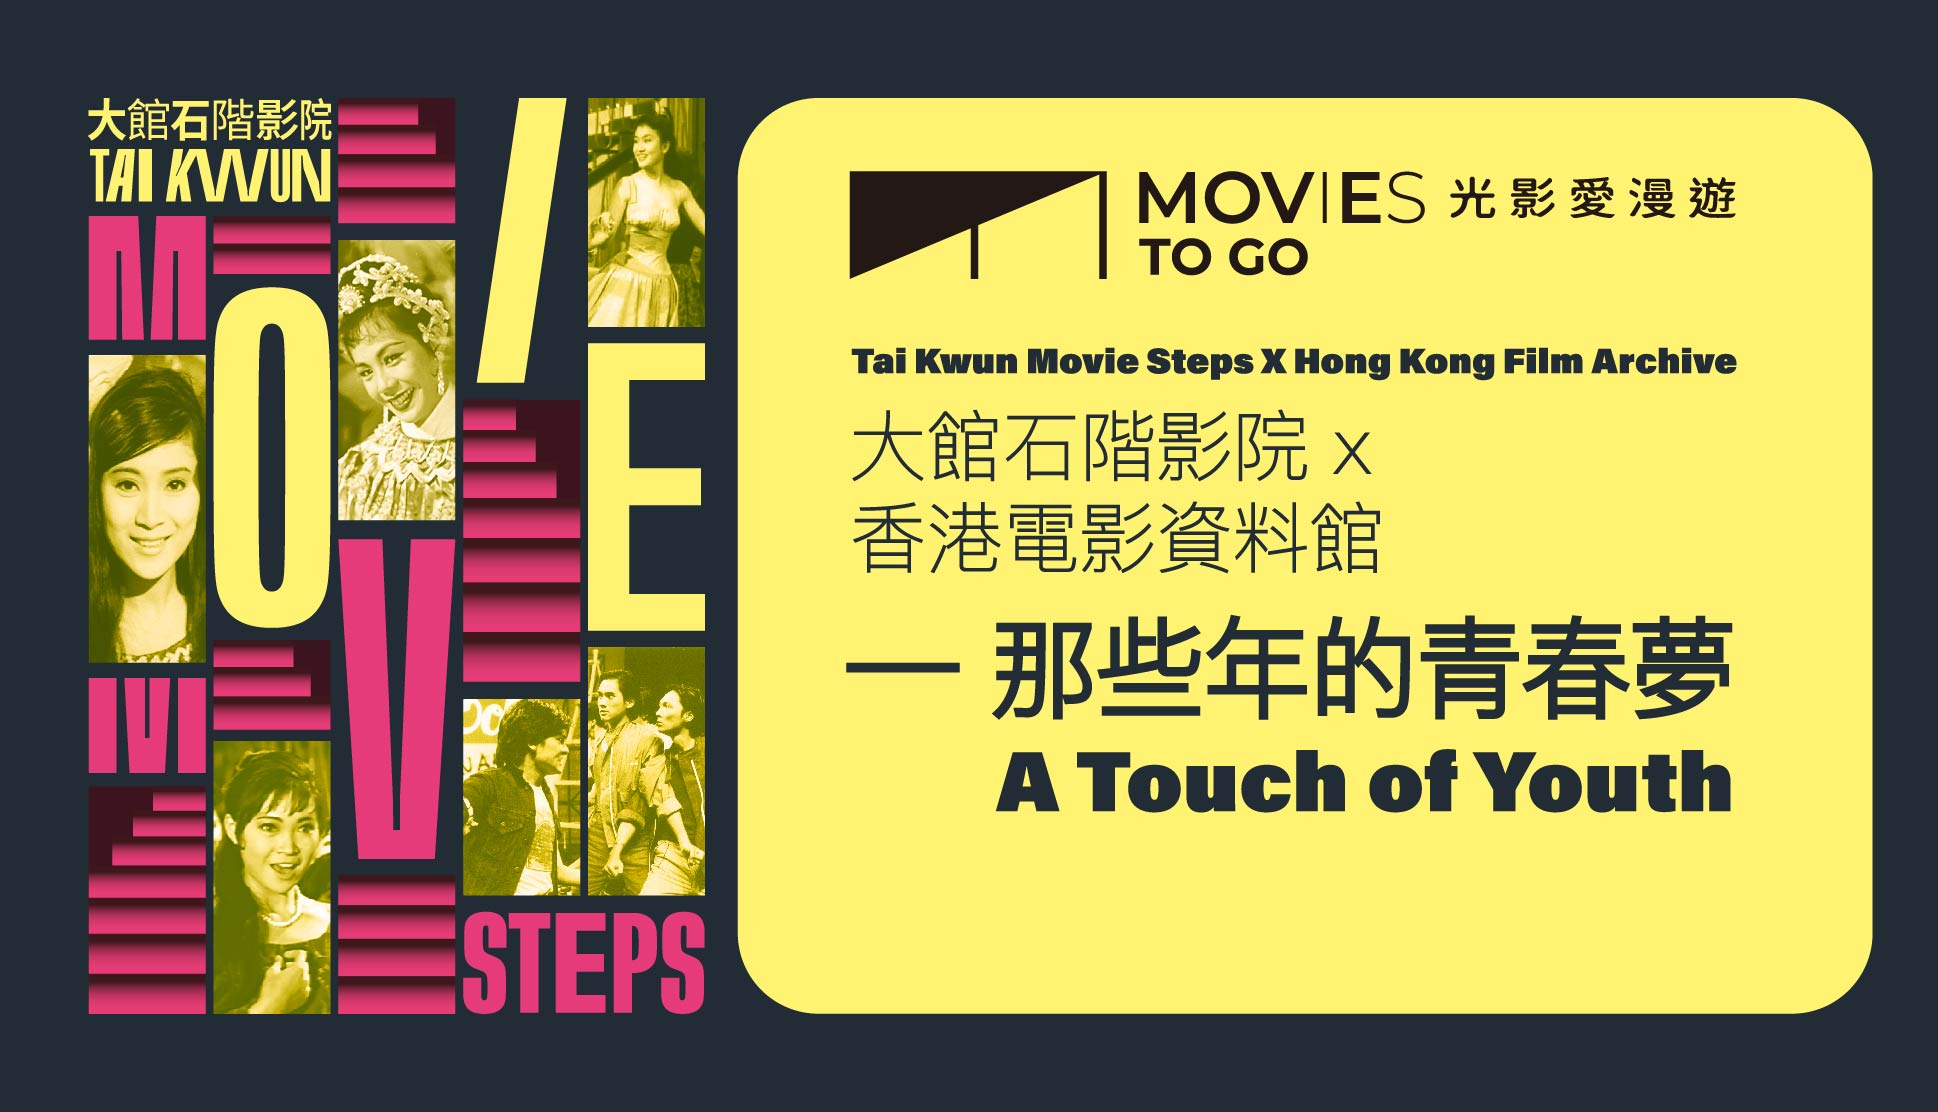 光影爱漫游 - 大馆石阶影院 X 香港电影资料馆——那些年的青春梦 